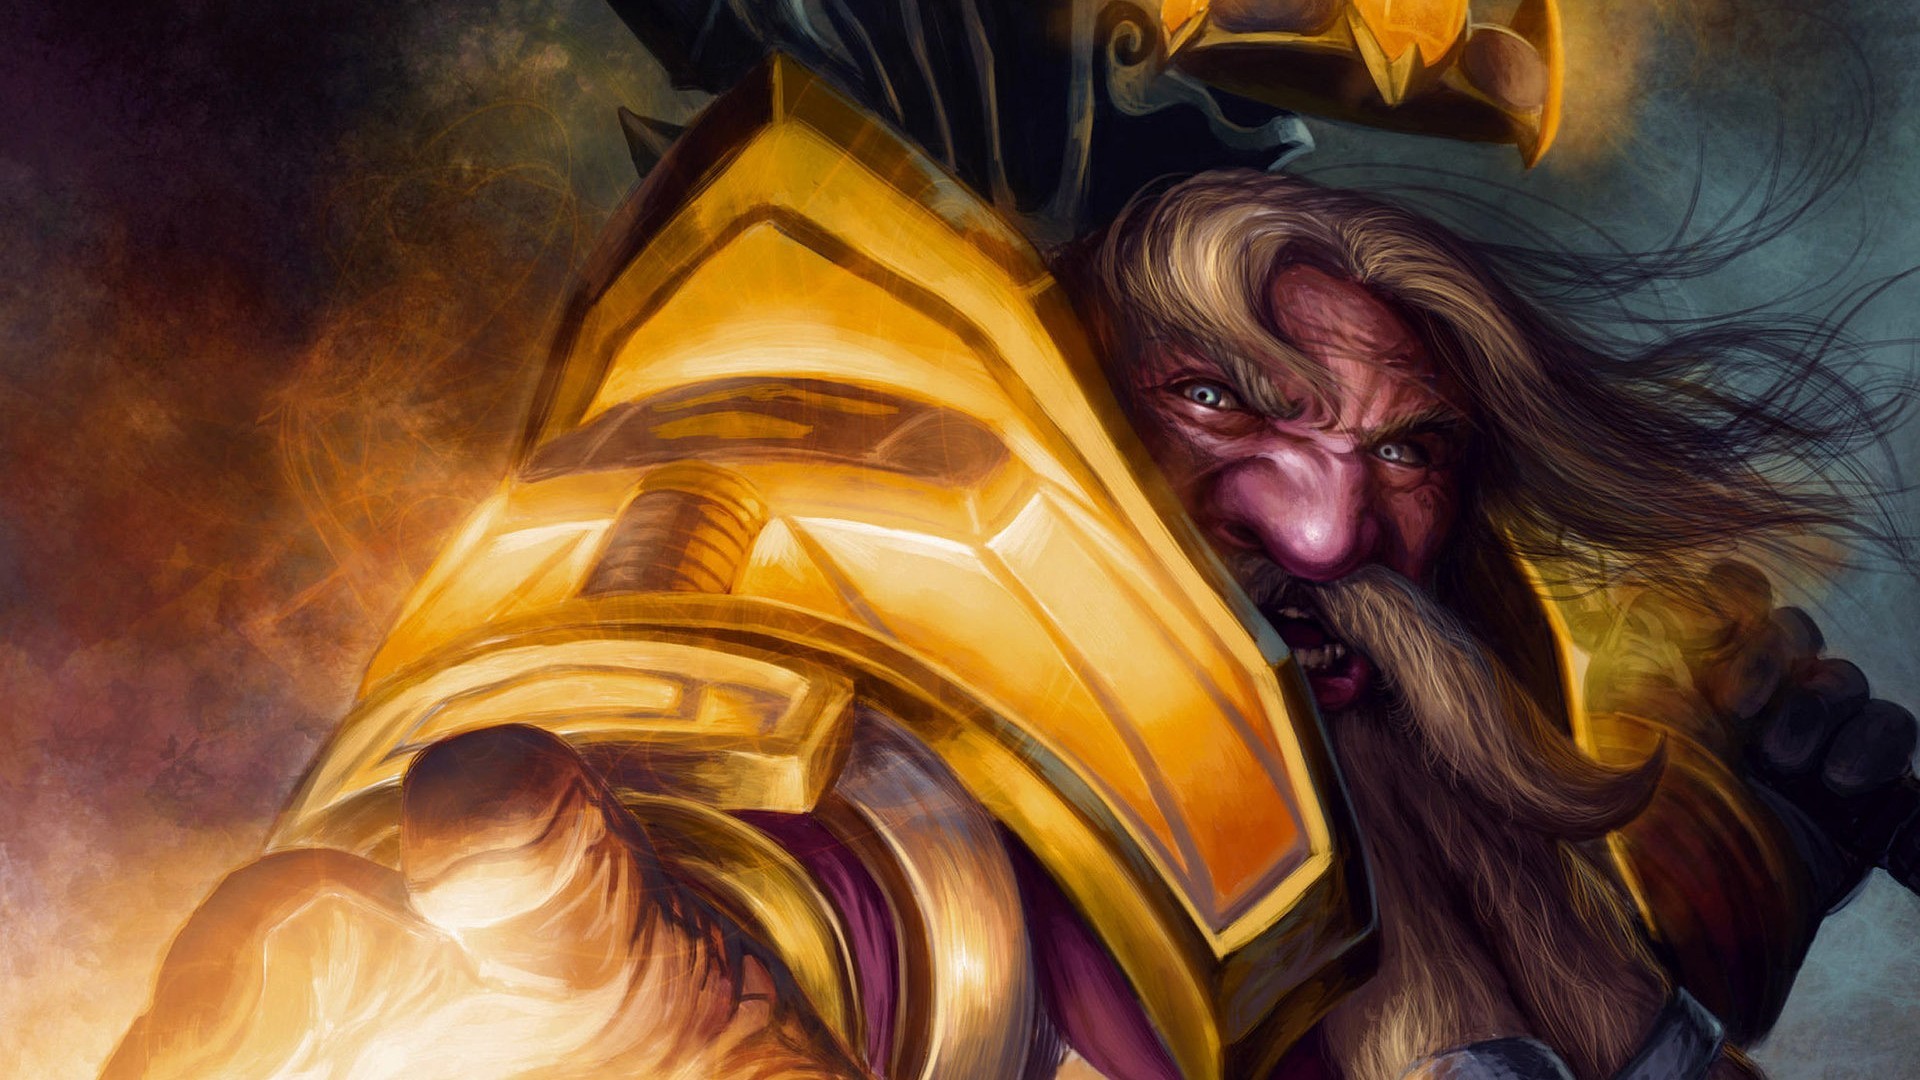 General 1920x1080 fantasy art World of Warcraft video games PC gaming dwarf fantasy men video game art